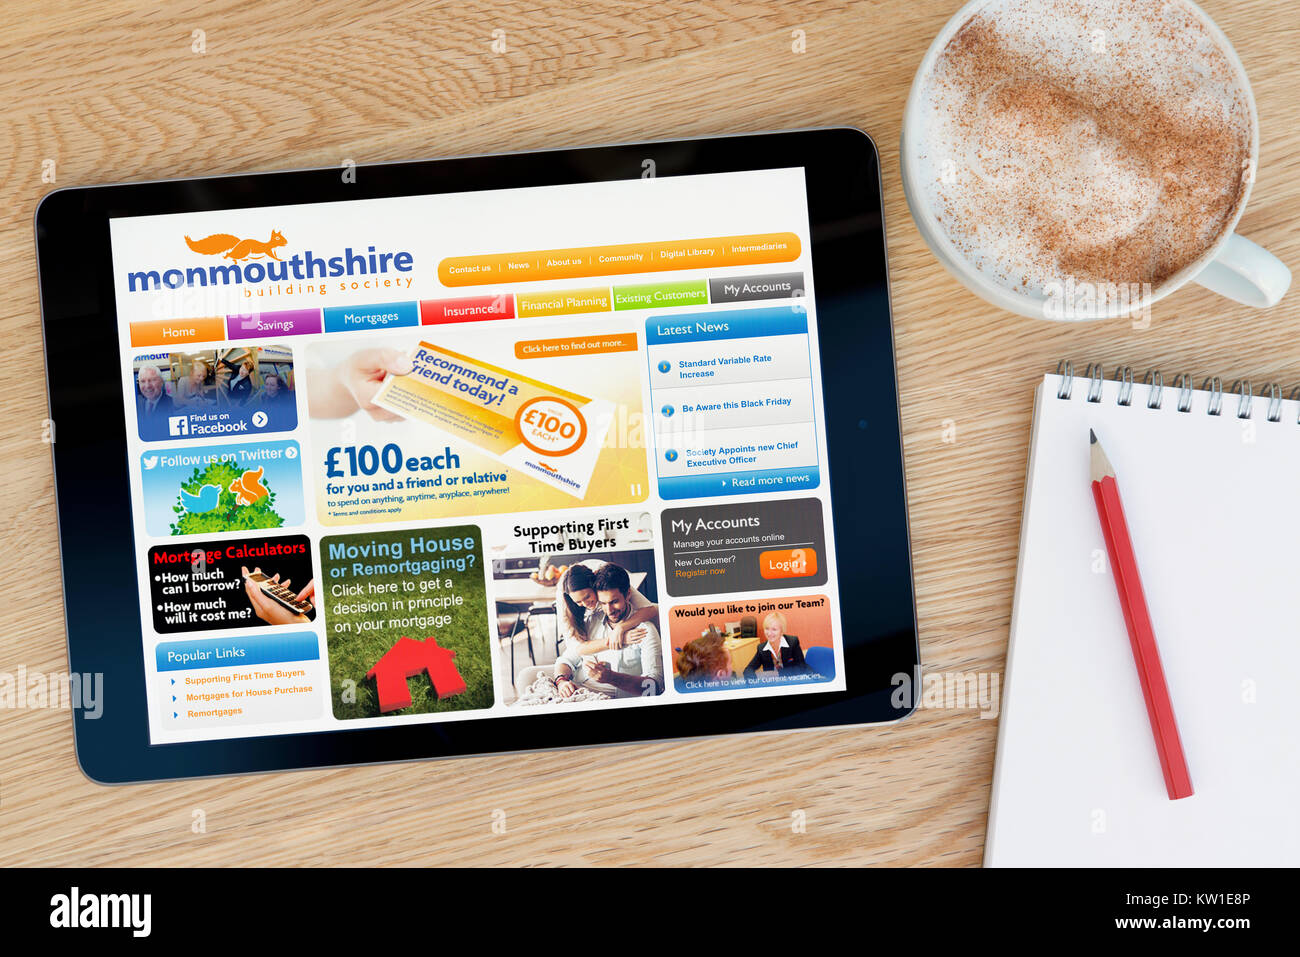 Il Monmouthshire Building Society sito web su un tablet iPad, appoggiato su un tavolo di legno accanto a un blocco note, matita e tazza di caffè (editoriale solo) Foto Stock